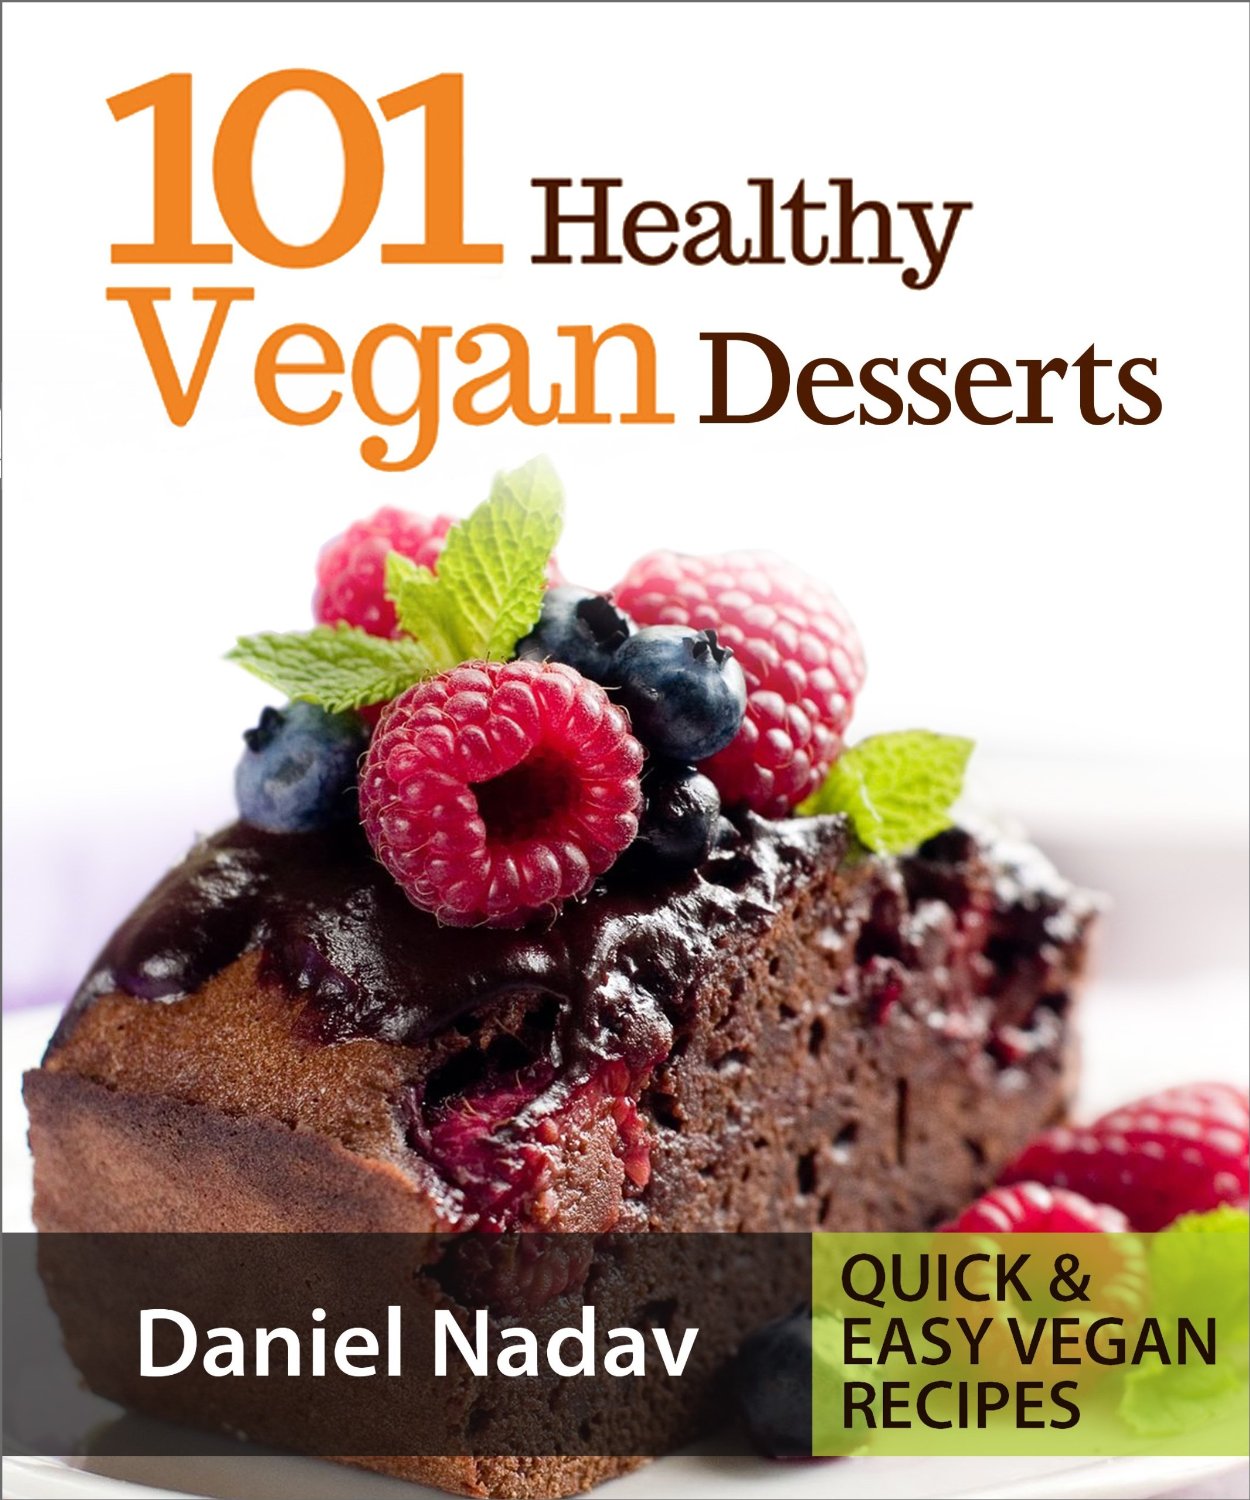 101 Healthy Vegan Desserts by Daniel Nadav